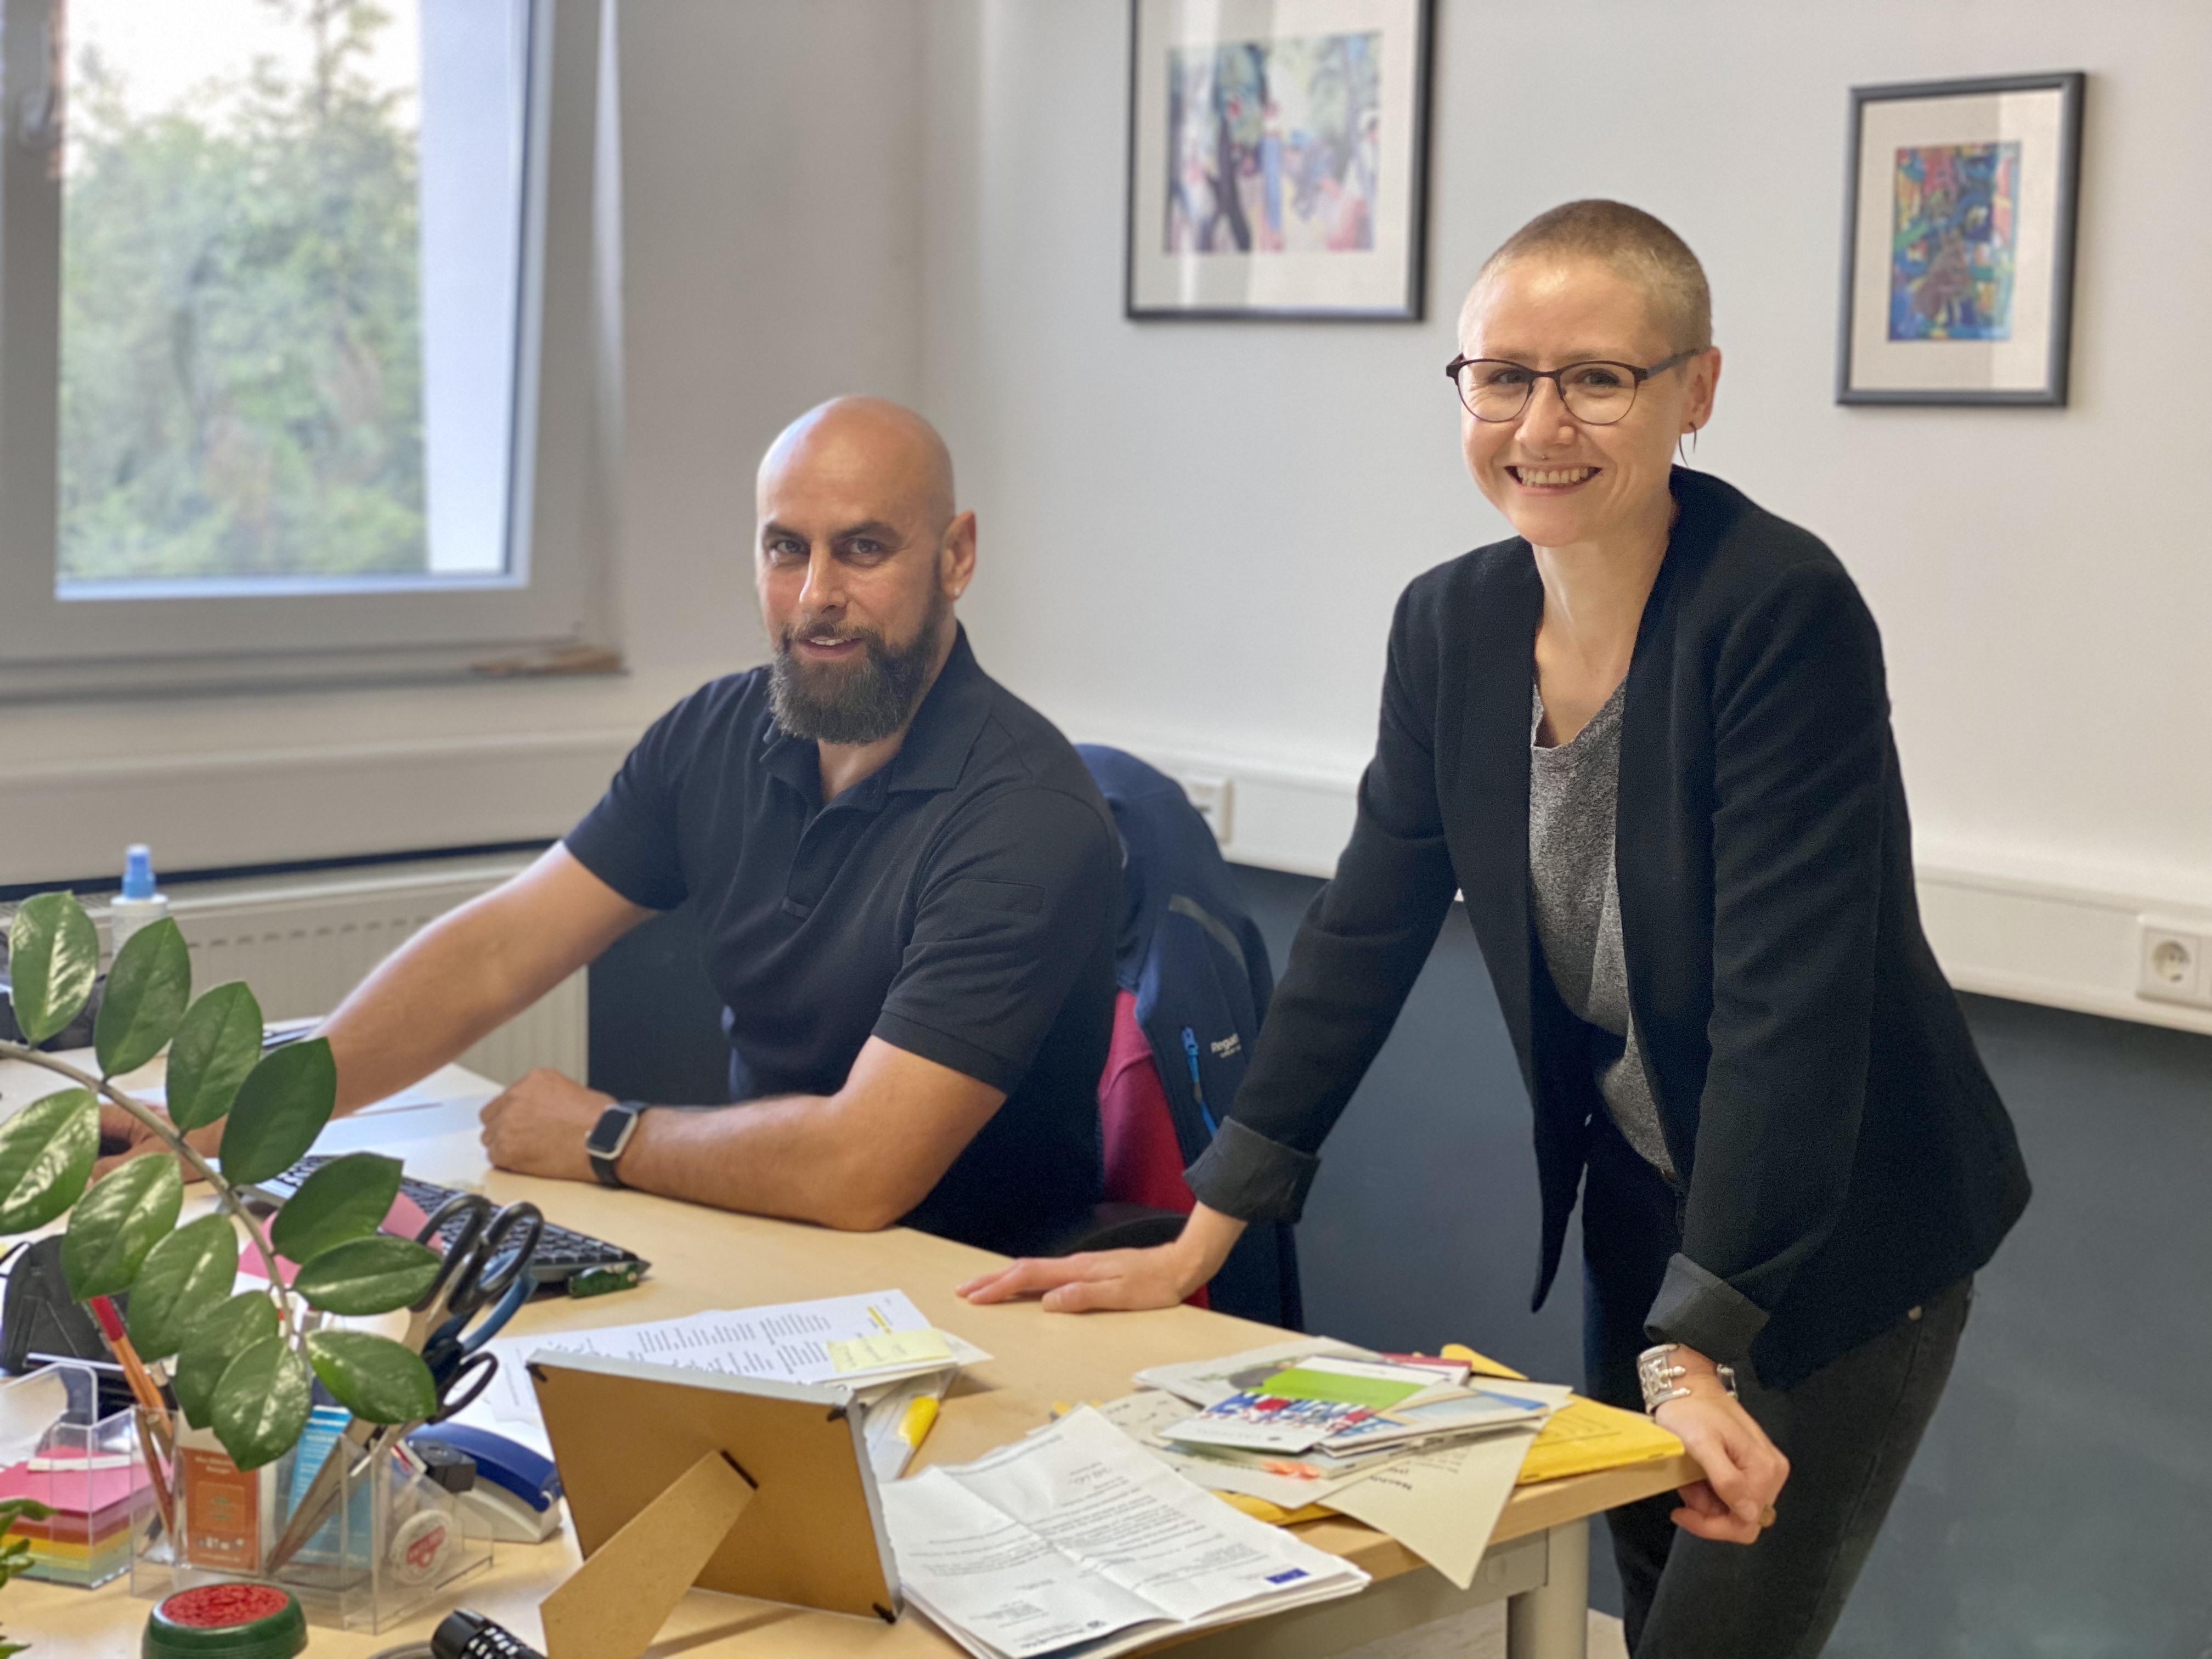 Ulli Roß und Ina Frantzen beraten seit September 2021 zusammen mit KollegInnen  kostenlos und unverbindlich im Innovations- und Qualifizierungszentrum (IQW) des Caritasverbandes Worms e. V.